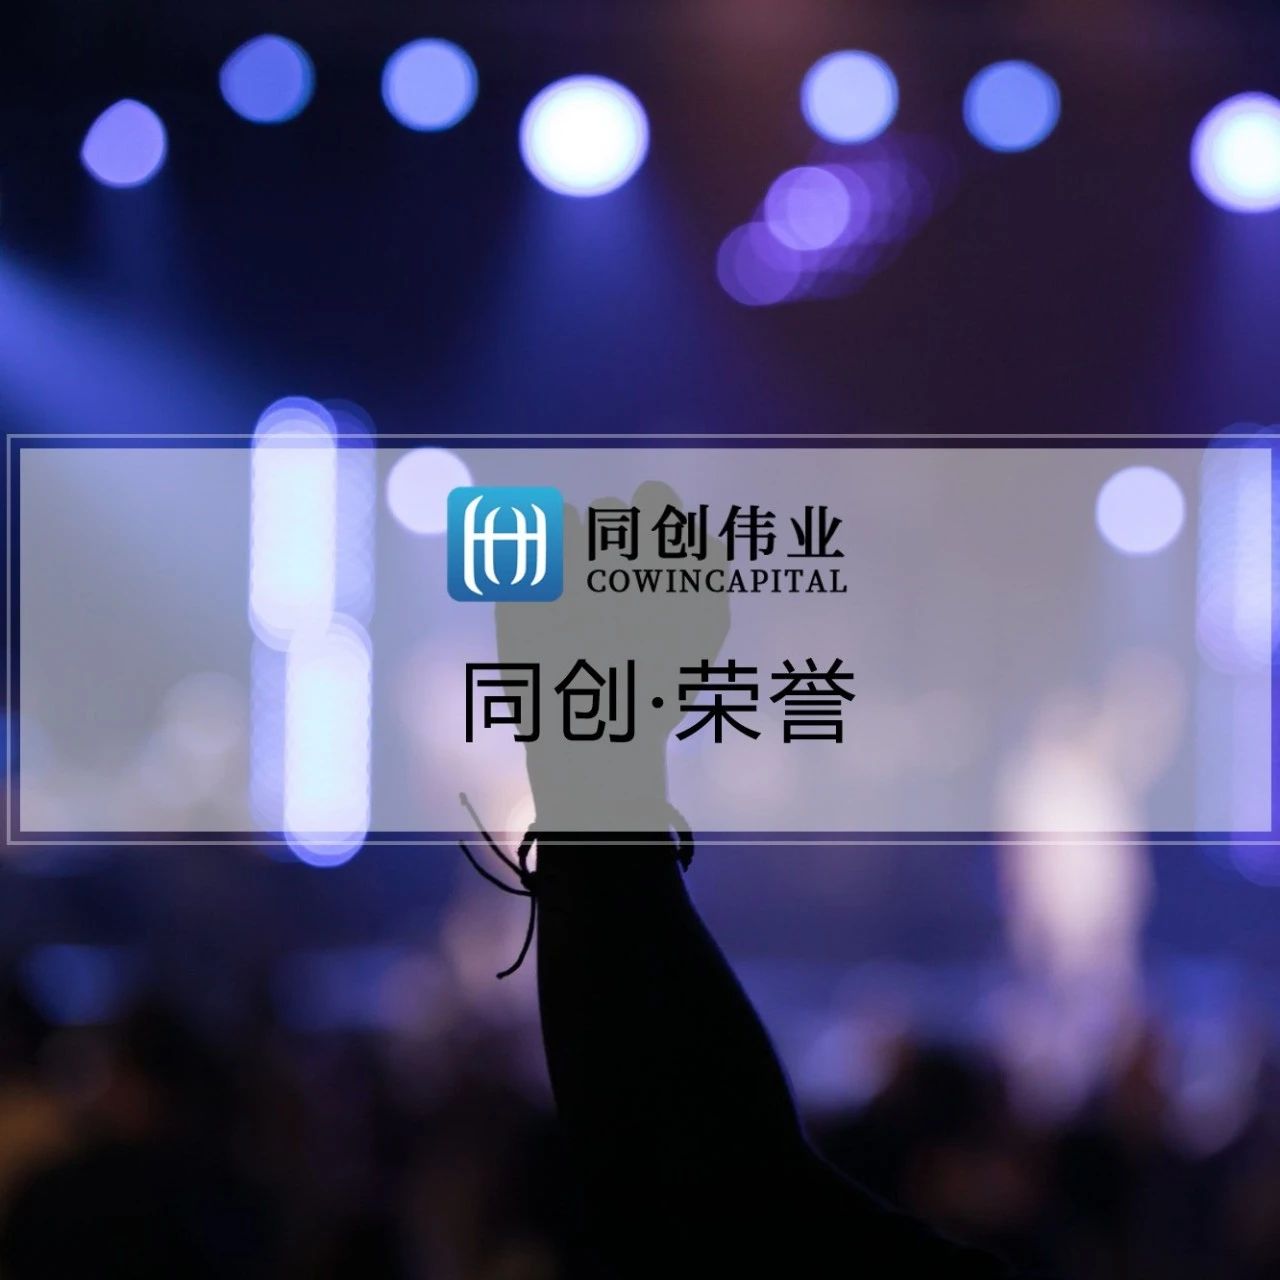 同创伟业及成员企业荣获甲子光年「2022-2023中国科技产业投资榜」多项大奖